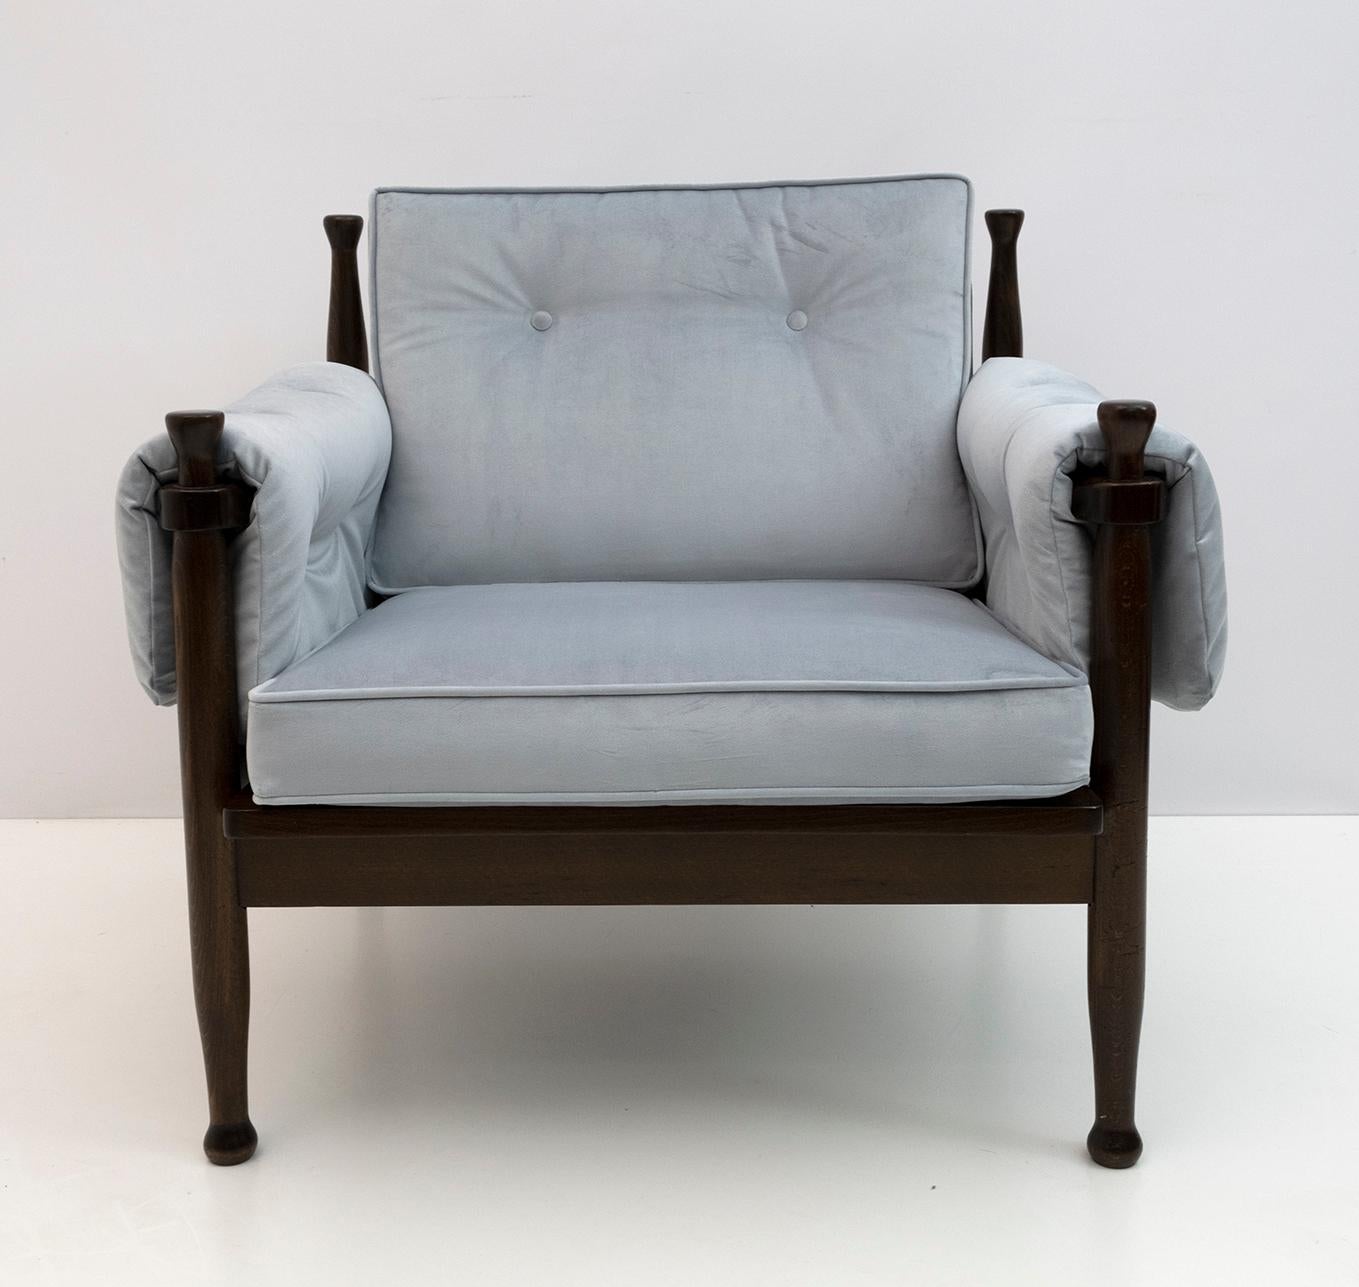 Sessel aus nussbaumfarben gebeizter Buche, im Stil von Eric Merthen, Schweden in den 1960er Jahren. Der Sessel wurde restauriert und mit hellblauem Samt neu gepolstert.